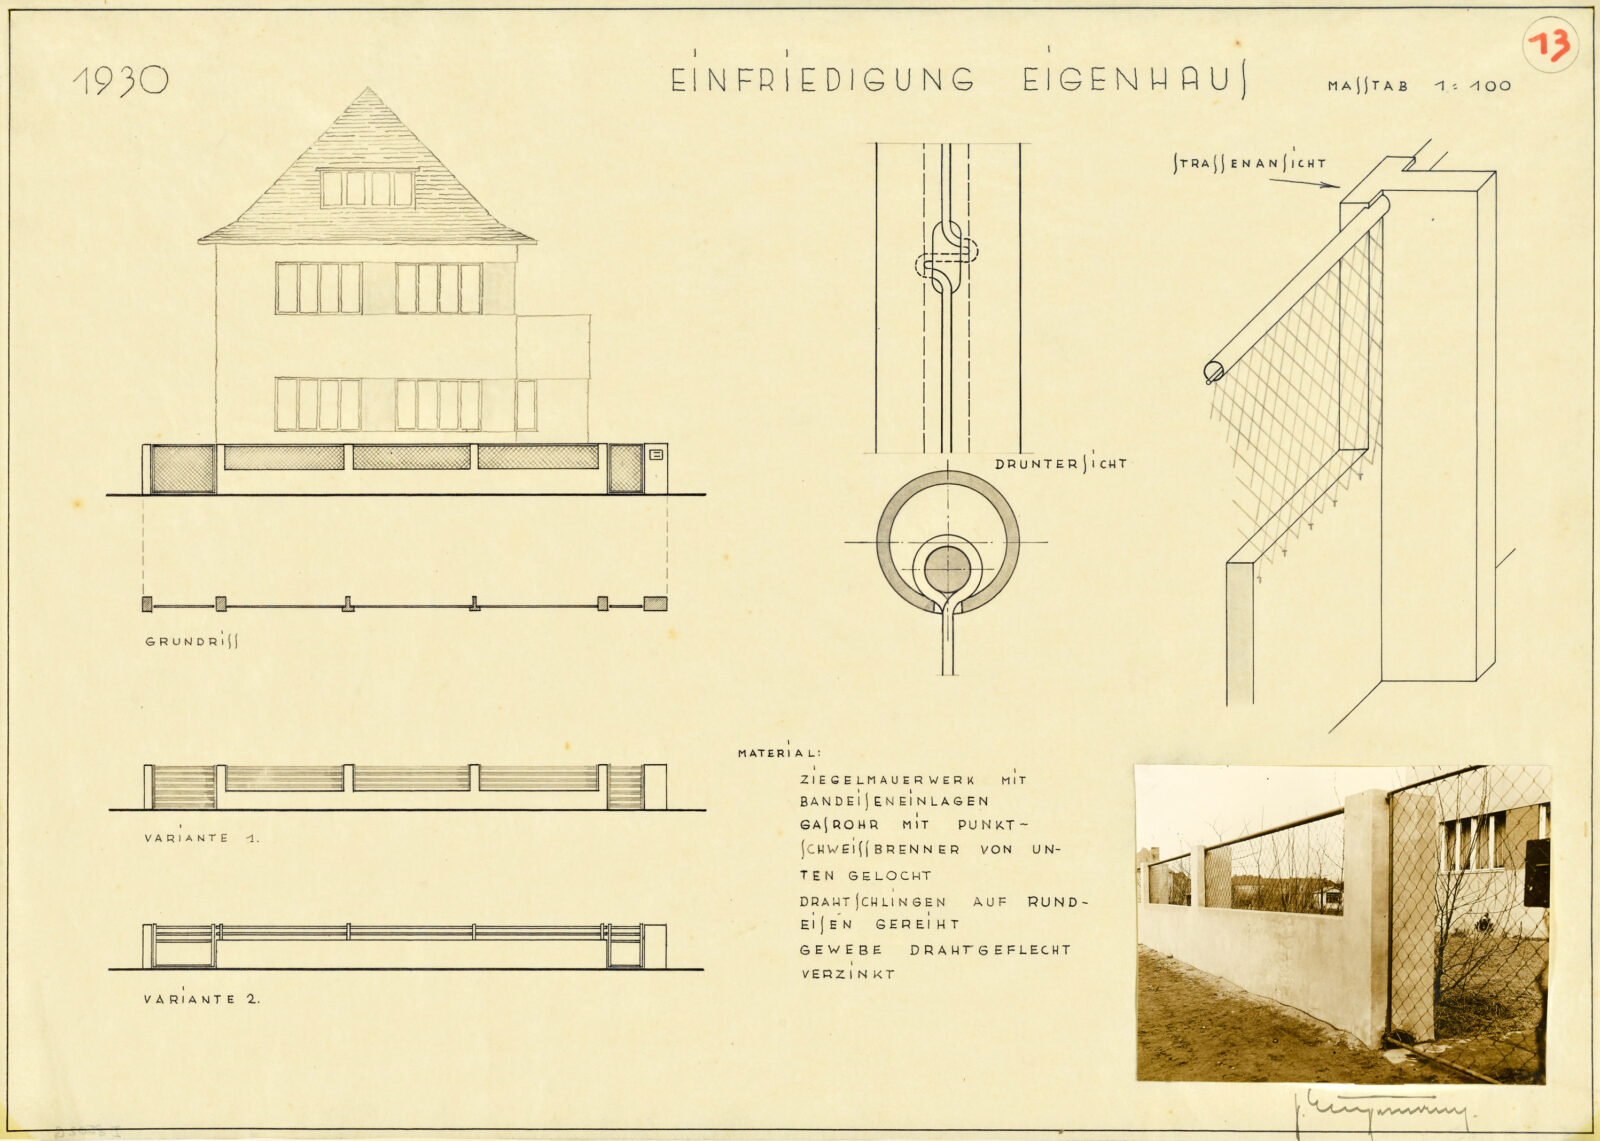 Architekturzeichnung mit Ansicht des Hauses und Detailausschnitte von zwei Varianten für eine Grundstücksbegrenzung aus Beton und Drahtgeflecht. Daneben eine isometrische Detailzeichnung und ein Foto der realisierten Variante.